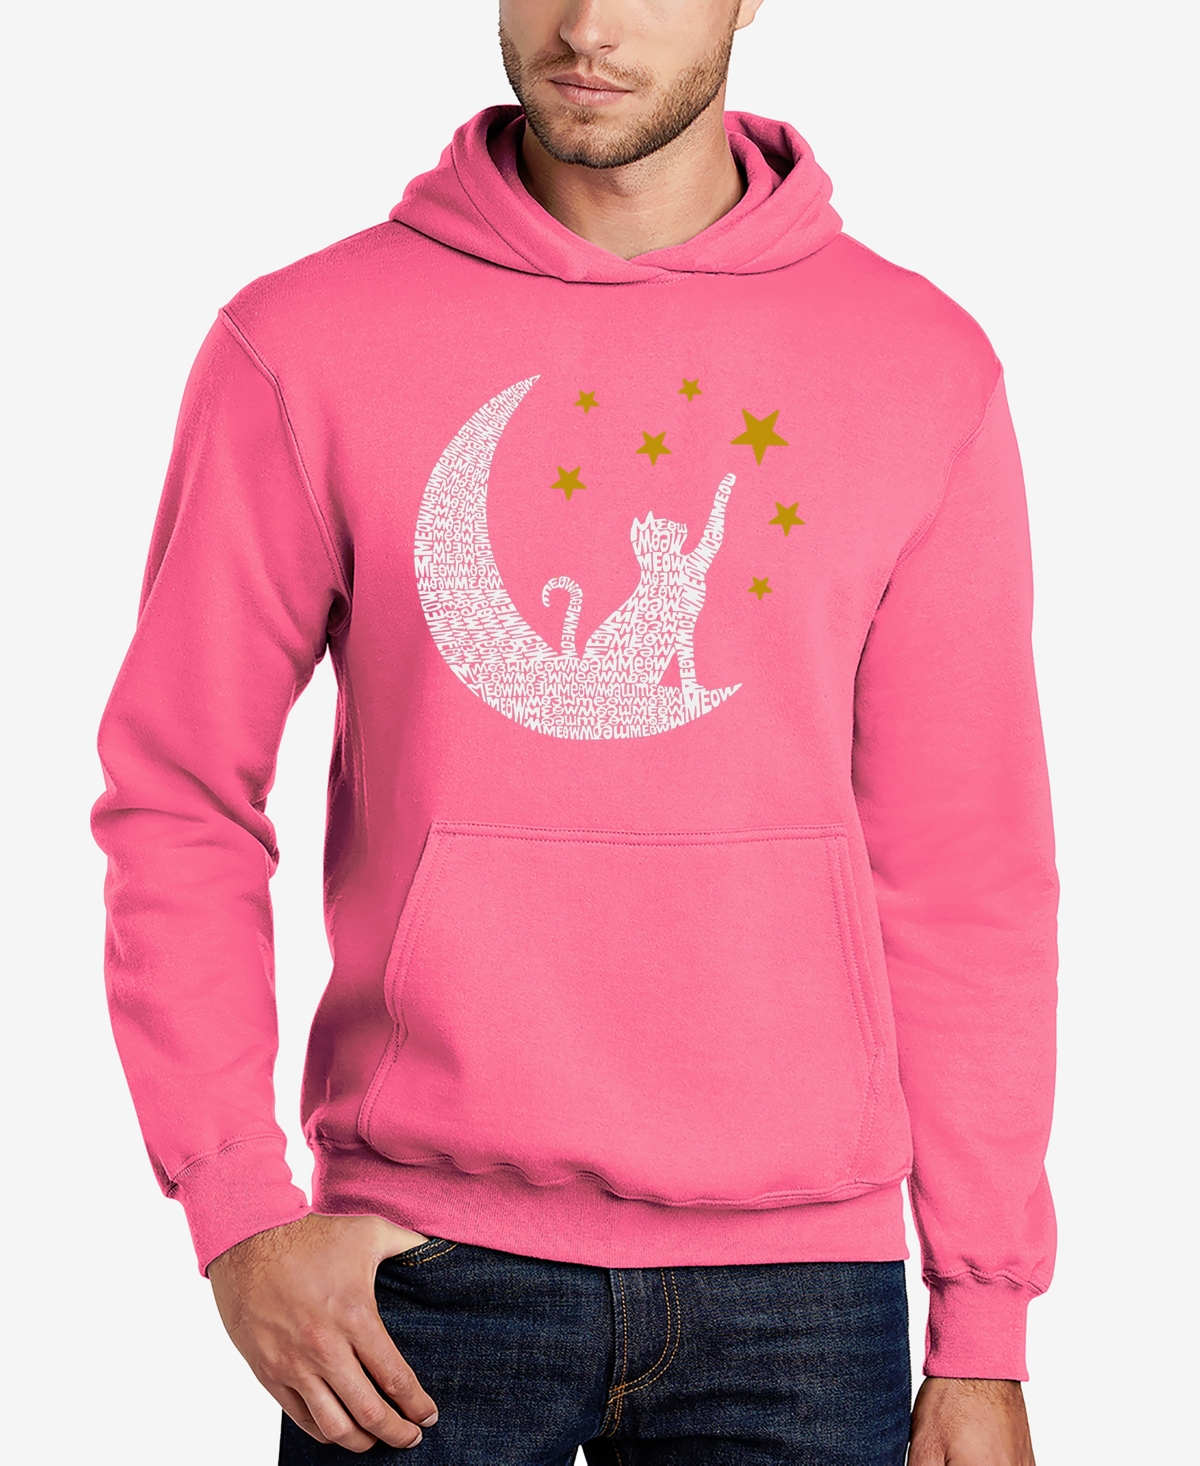 Cat Moon - Men's Word Art Hooded Sweatshirt - Pink